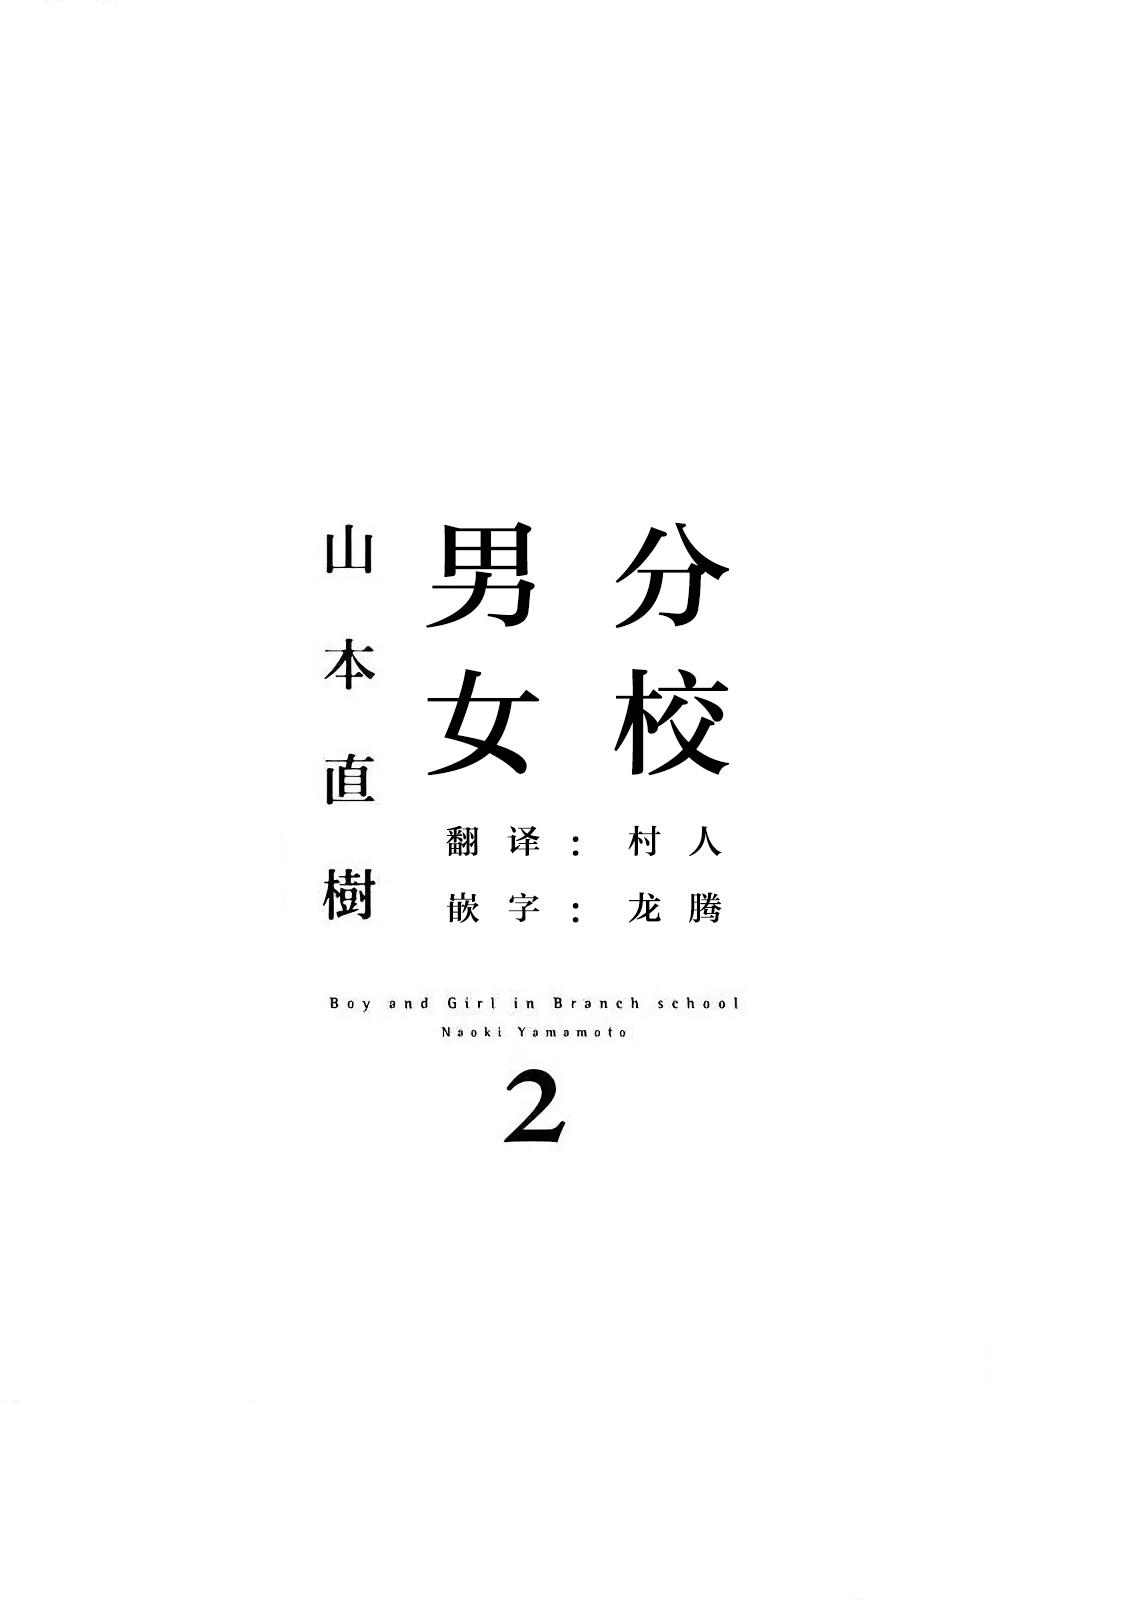 【yamamoto naoki】bunkou no hitotachi2 2